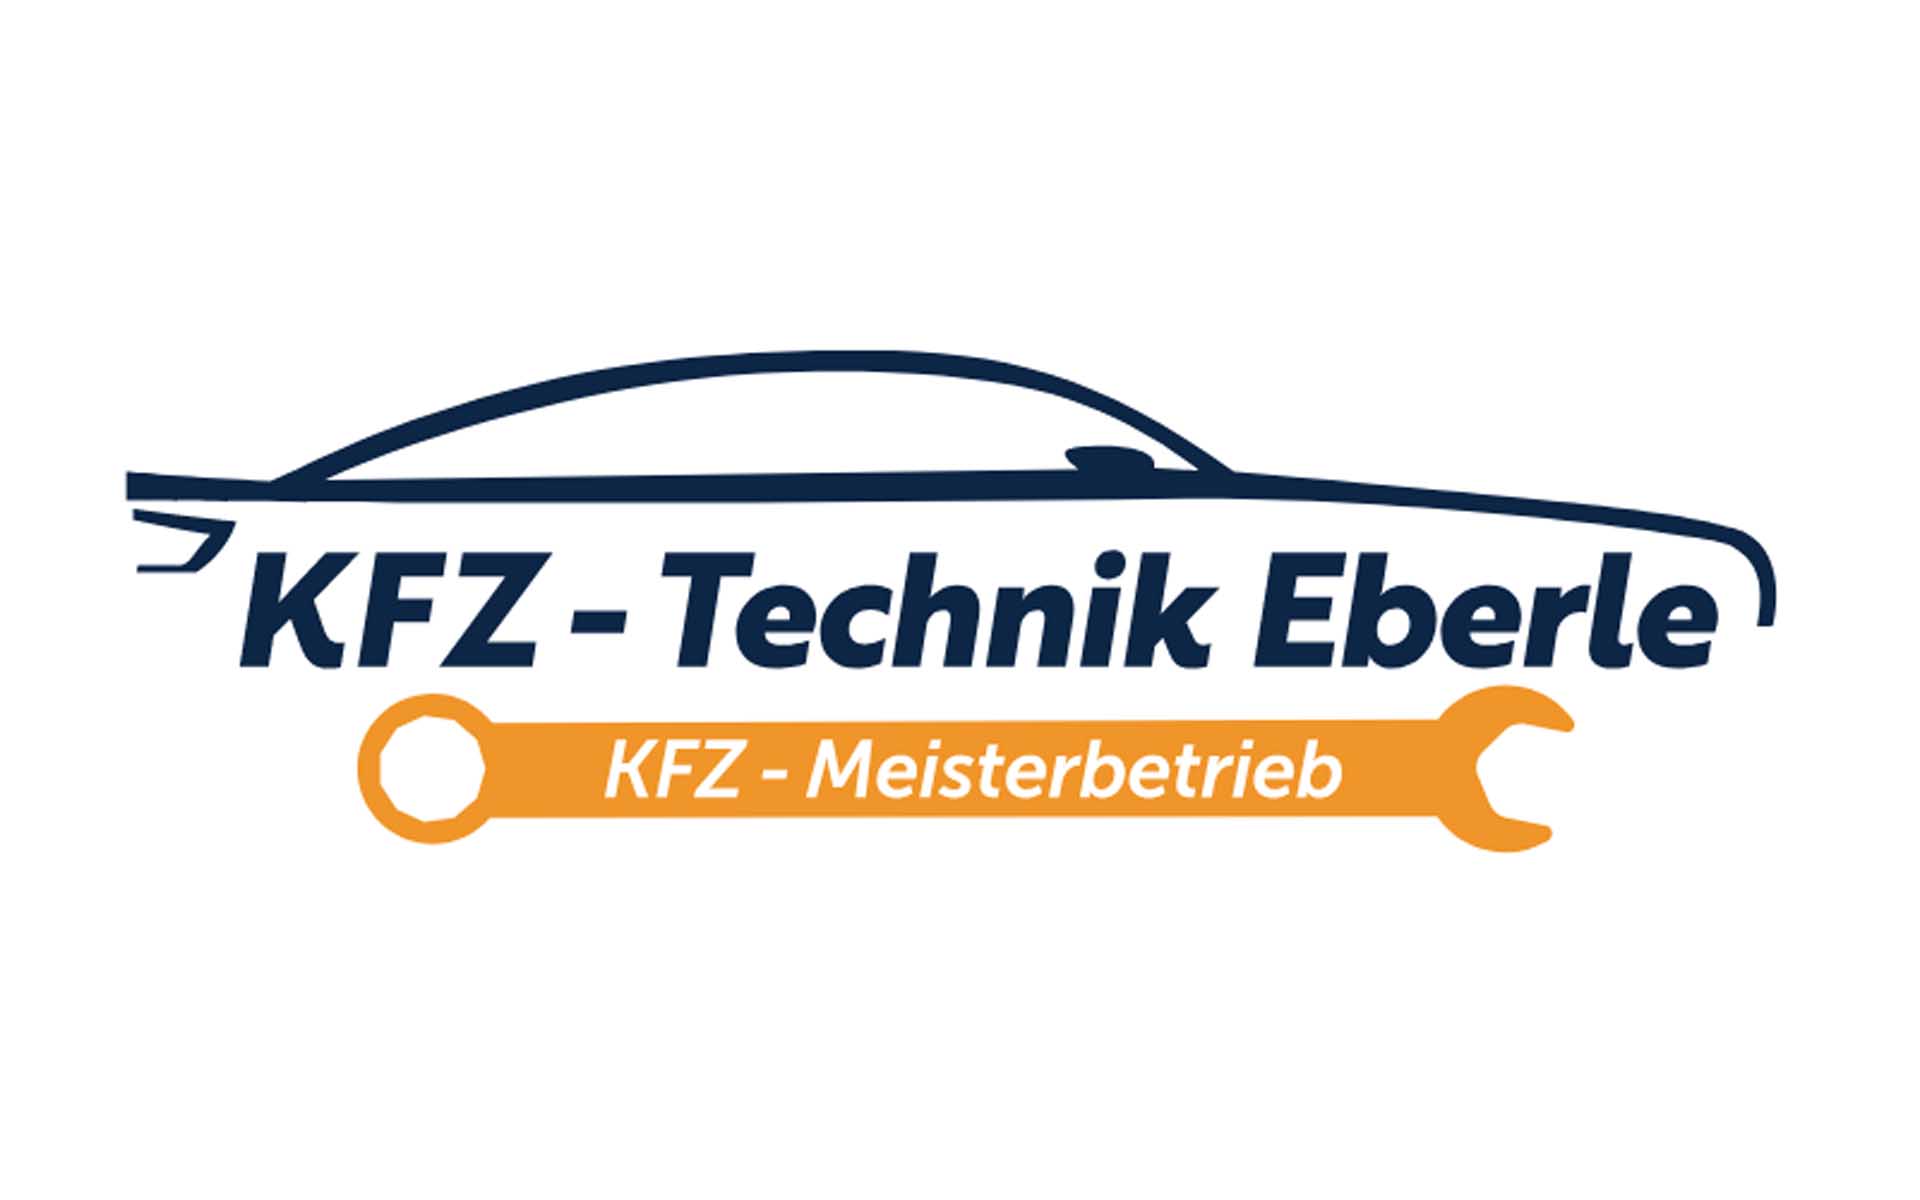 KFZ-Technik Eberle